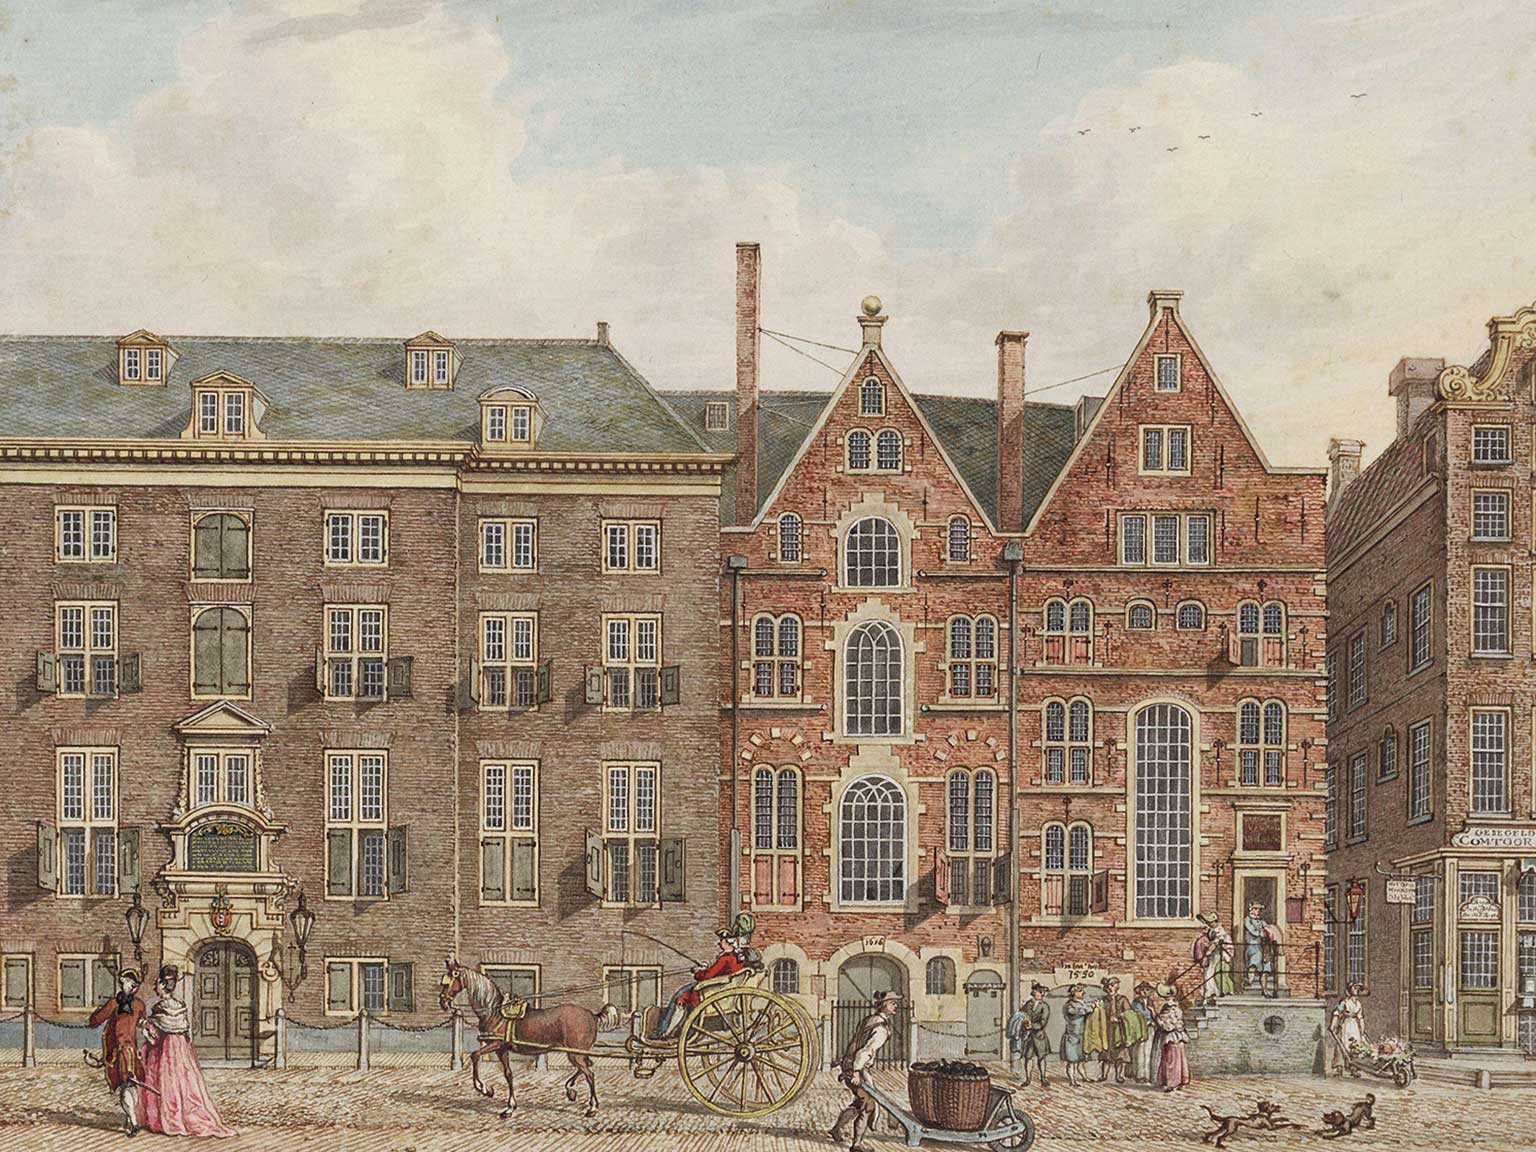 Oudezijds Voorburgwal 300-298, Amsterdam, tekening van H.P. Schouten uit 1775